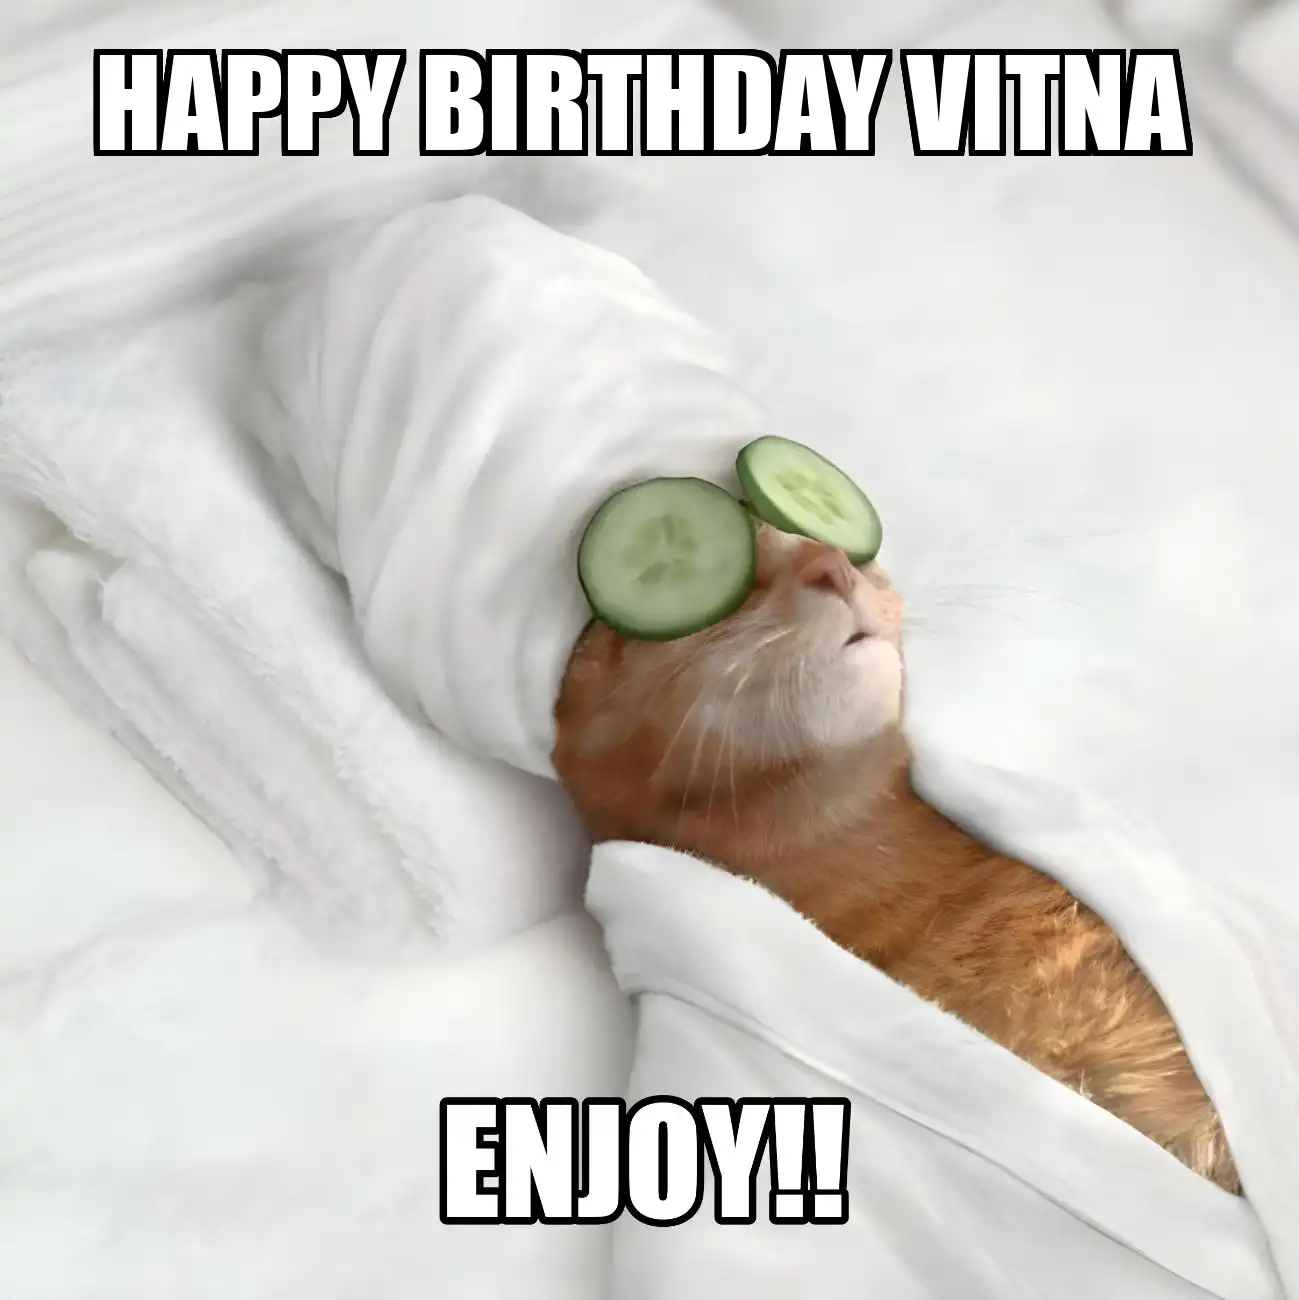 Happy Birthday Vitna Enjoy Cat Meme